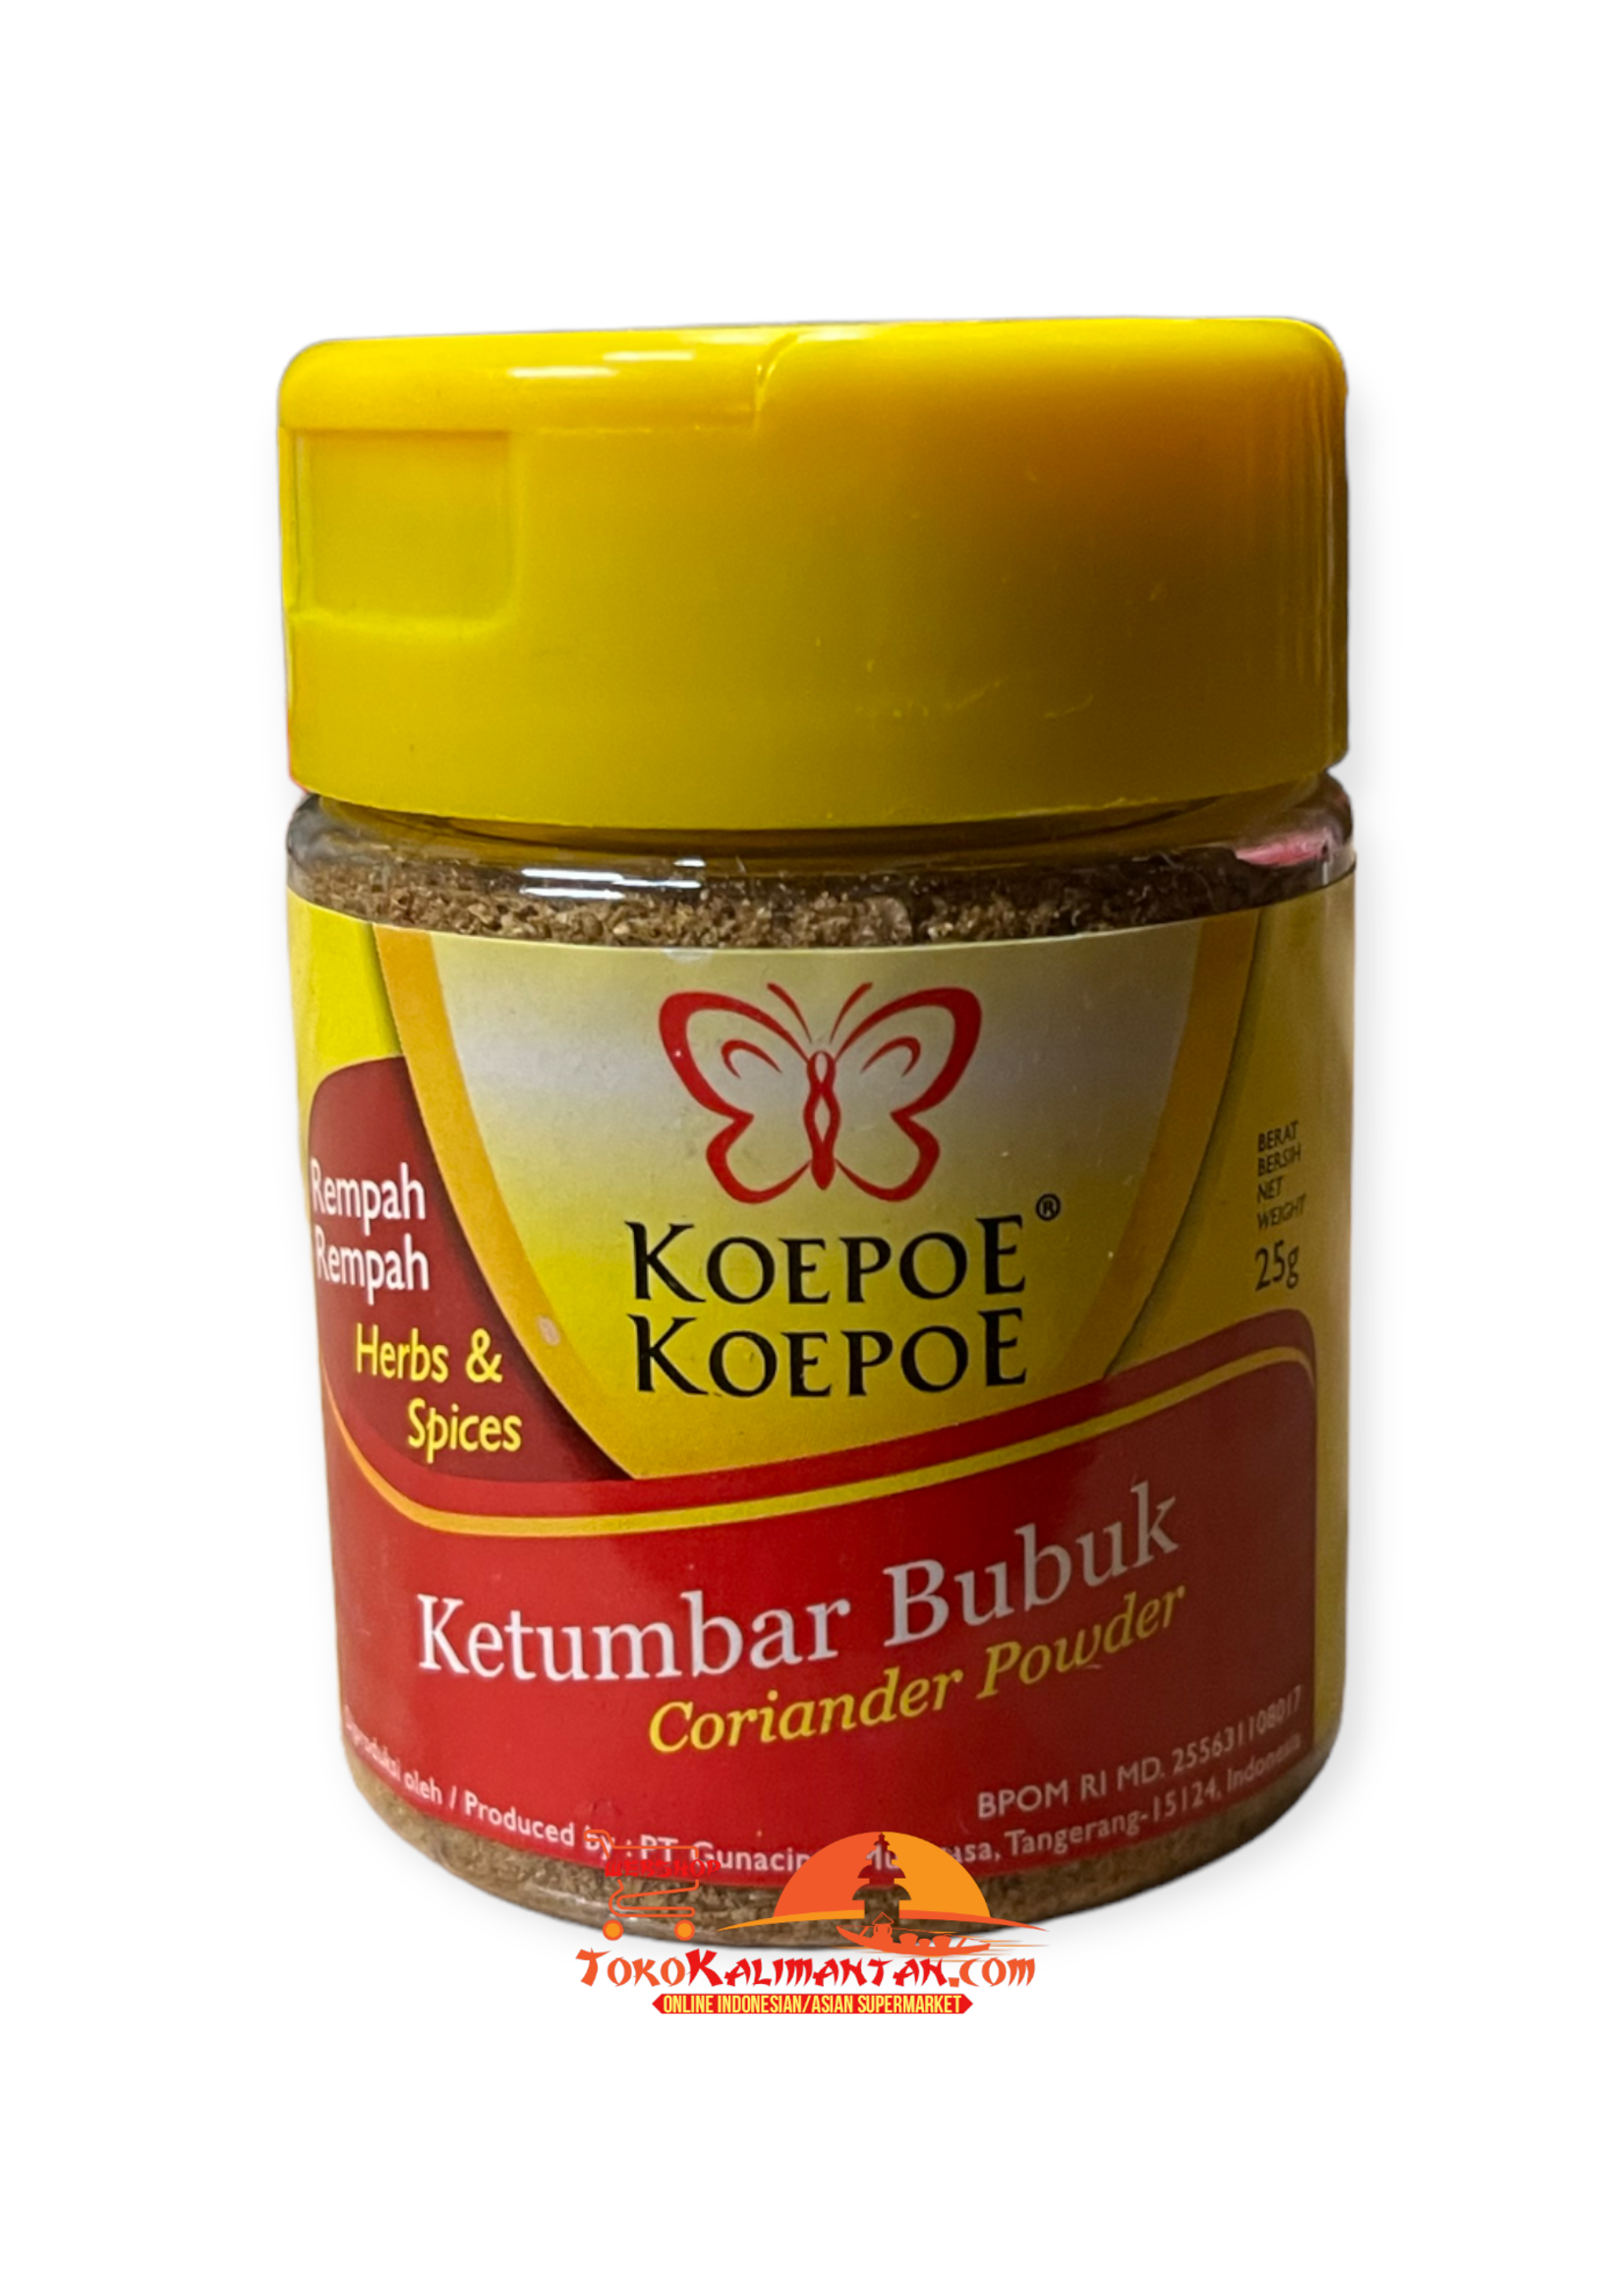 Koepoe-Koepoe Koepoe koepoe - ketumbar bubuk